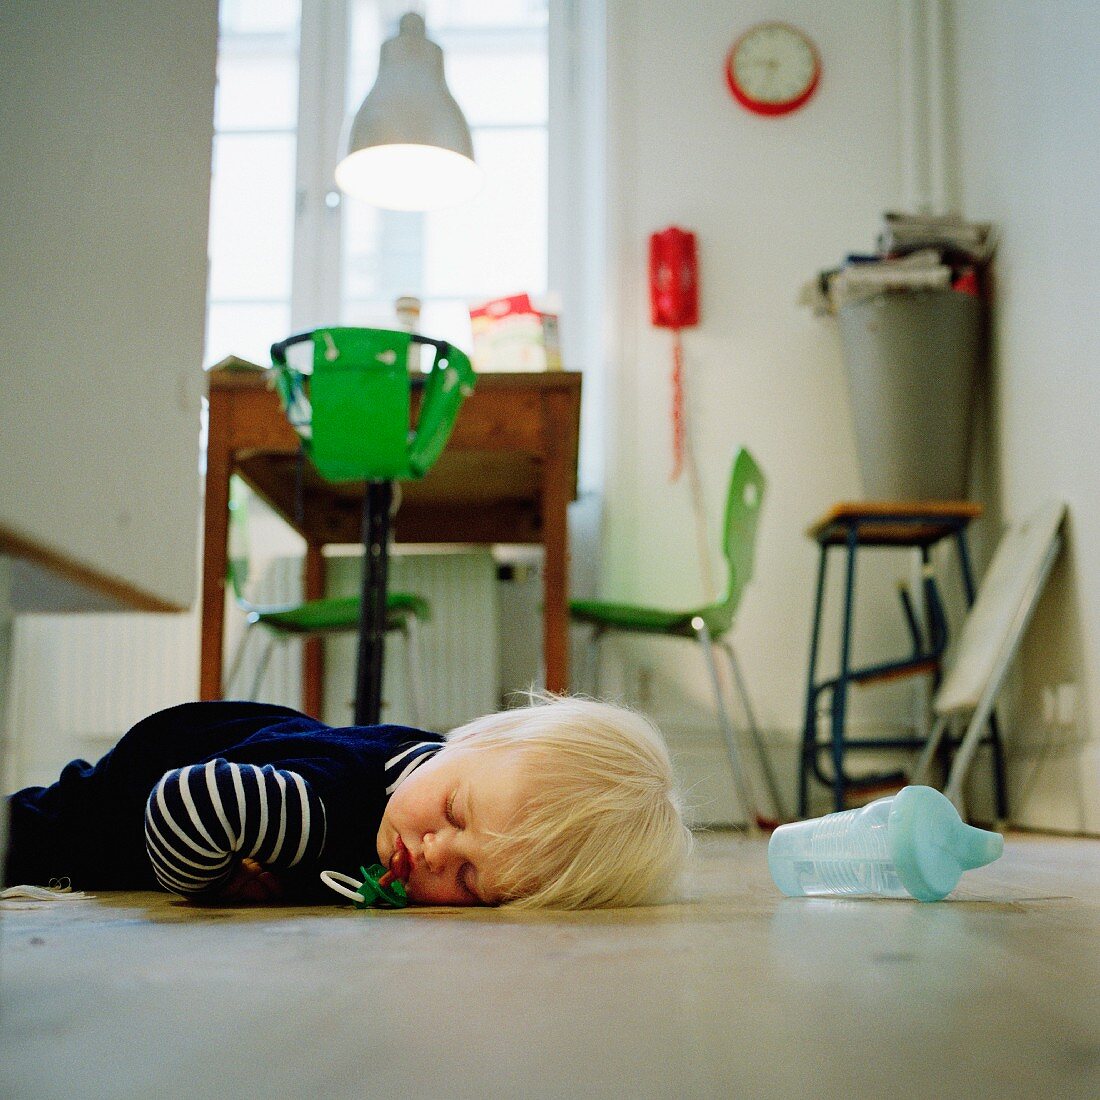 Kind mit herausgefallenem Schnuller, eingeschlafen auf dem Küchenboden; dahinter knallgrüner Kinderhängestuhl am Esstisch